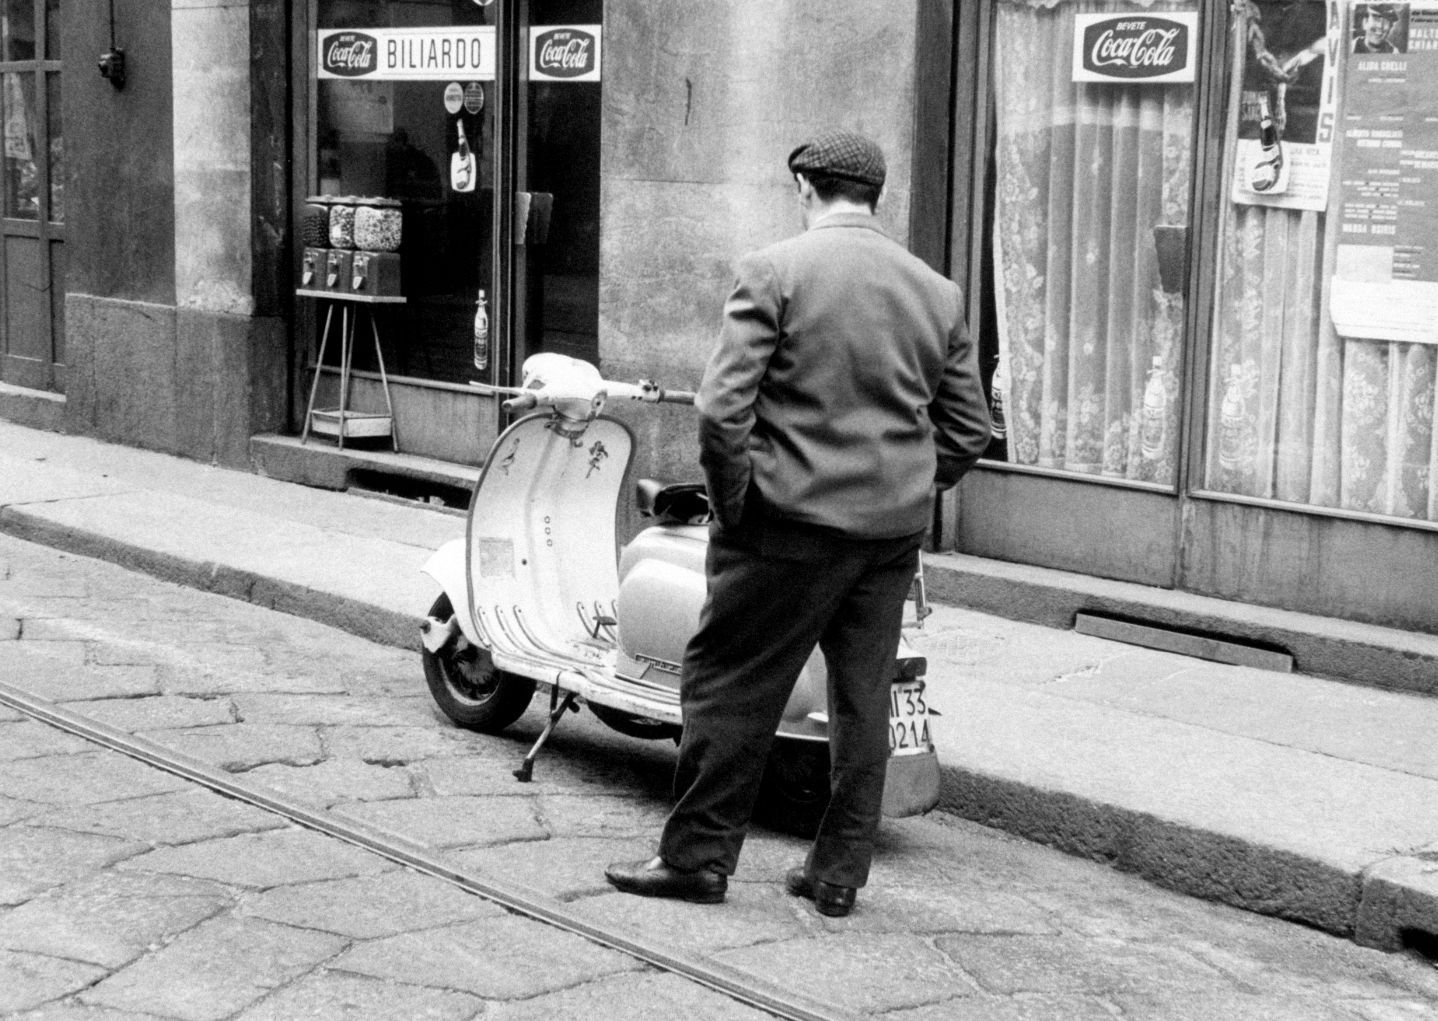 Un cadavere in redazione, la Milano degli anni Sessanta diventa noir- immagine 2